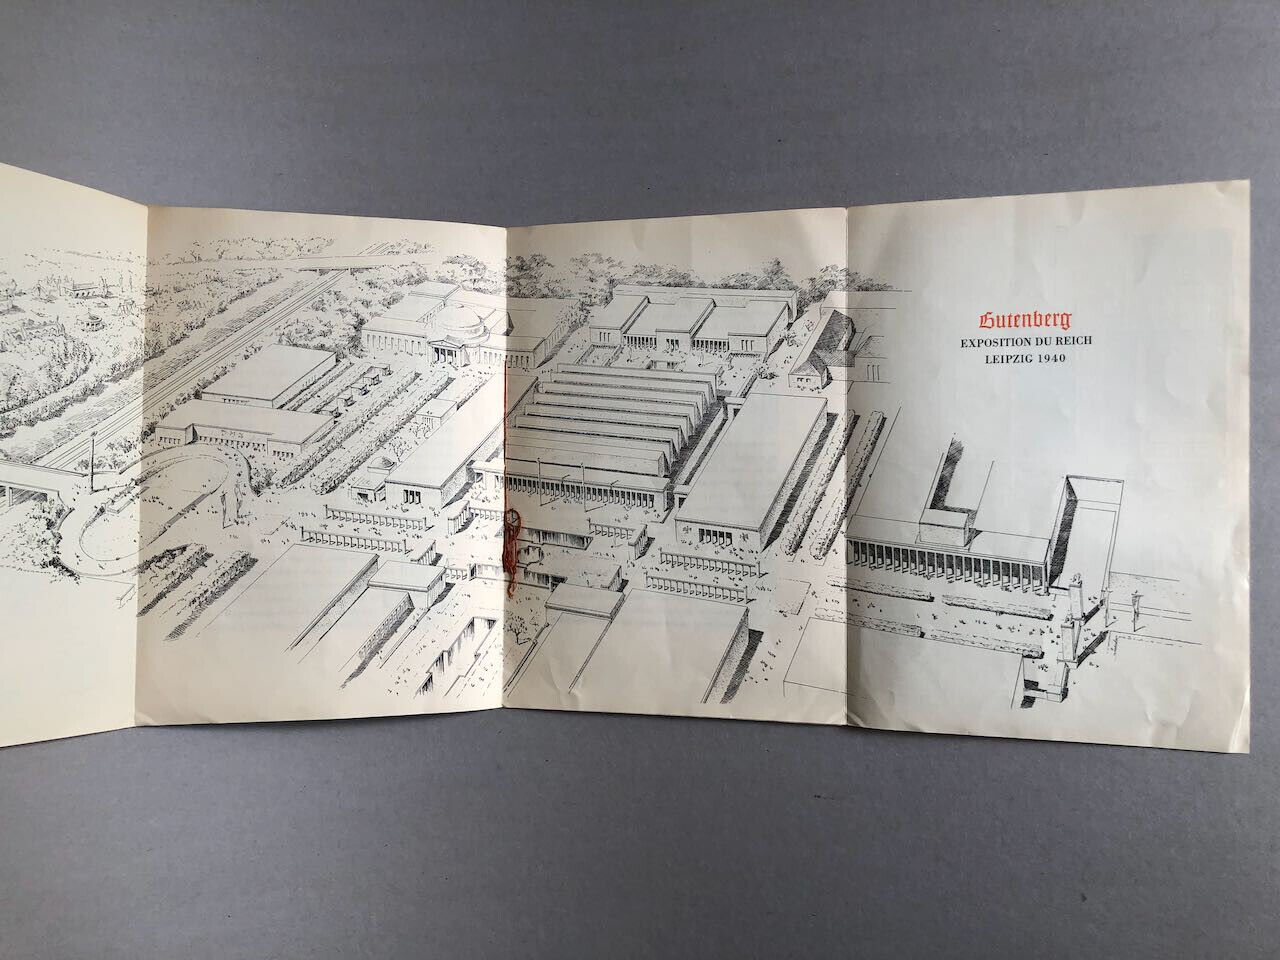 Gutenberg — Guide-brochure publicitaire de l'exposition du Reich — Leipzig 1940.